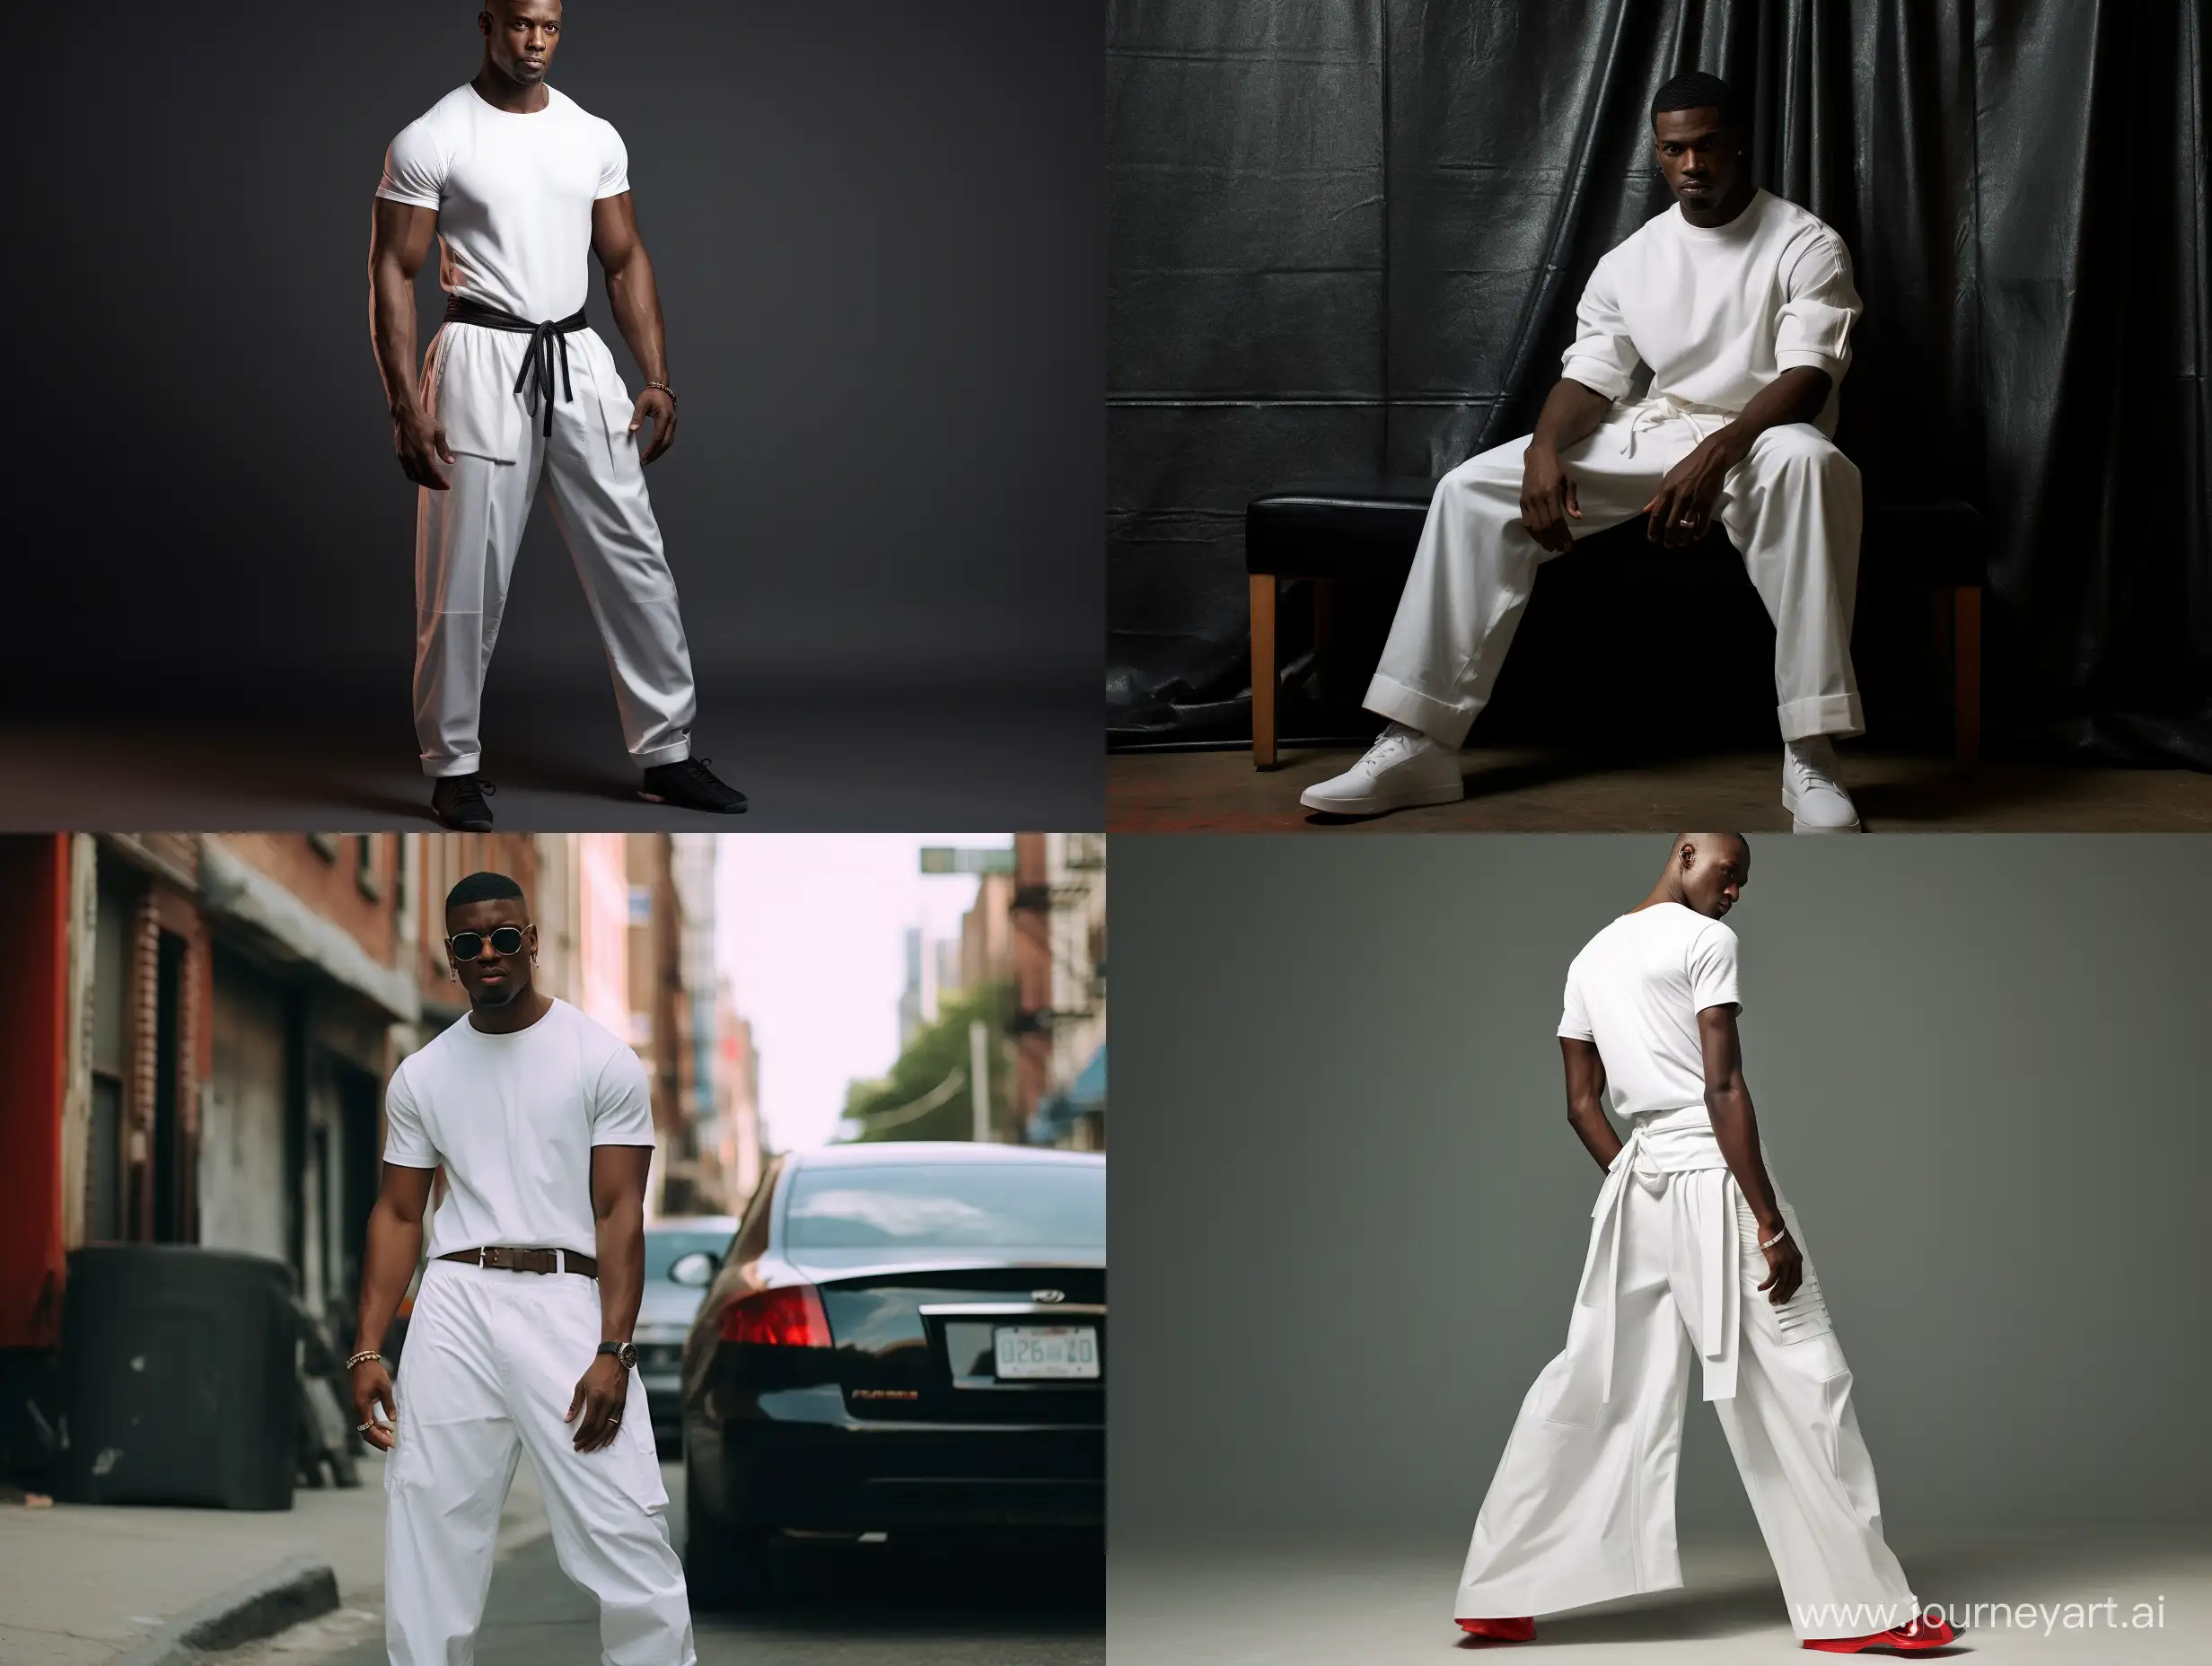 Stylish-Black-American-Man-in-Fashionable-Attire-with-Oversized-White-Taekwondo-Pants